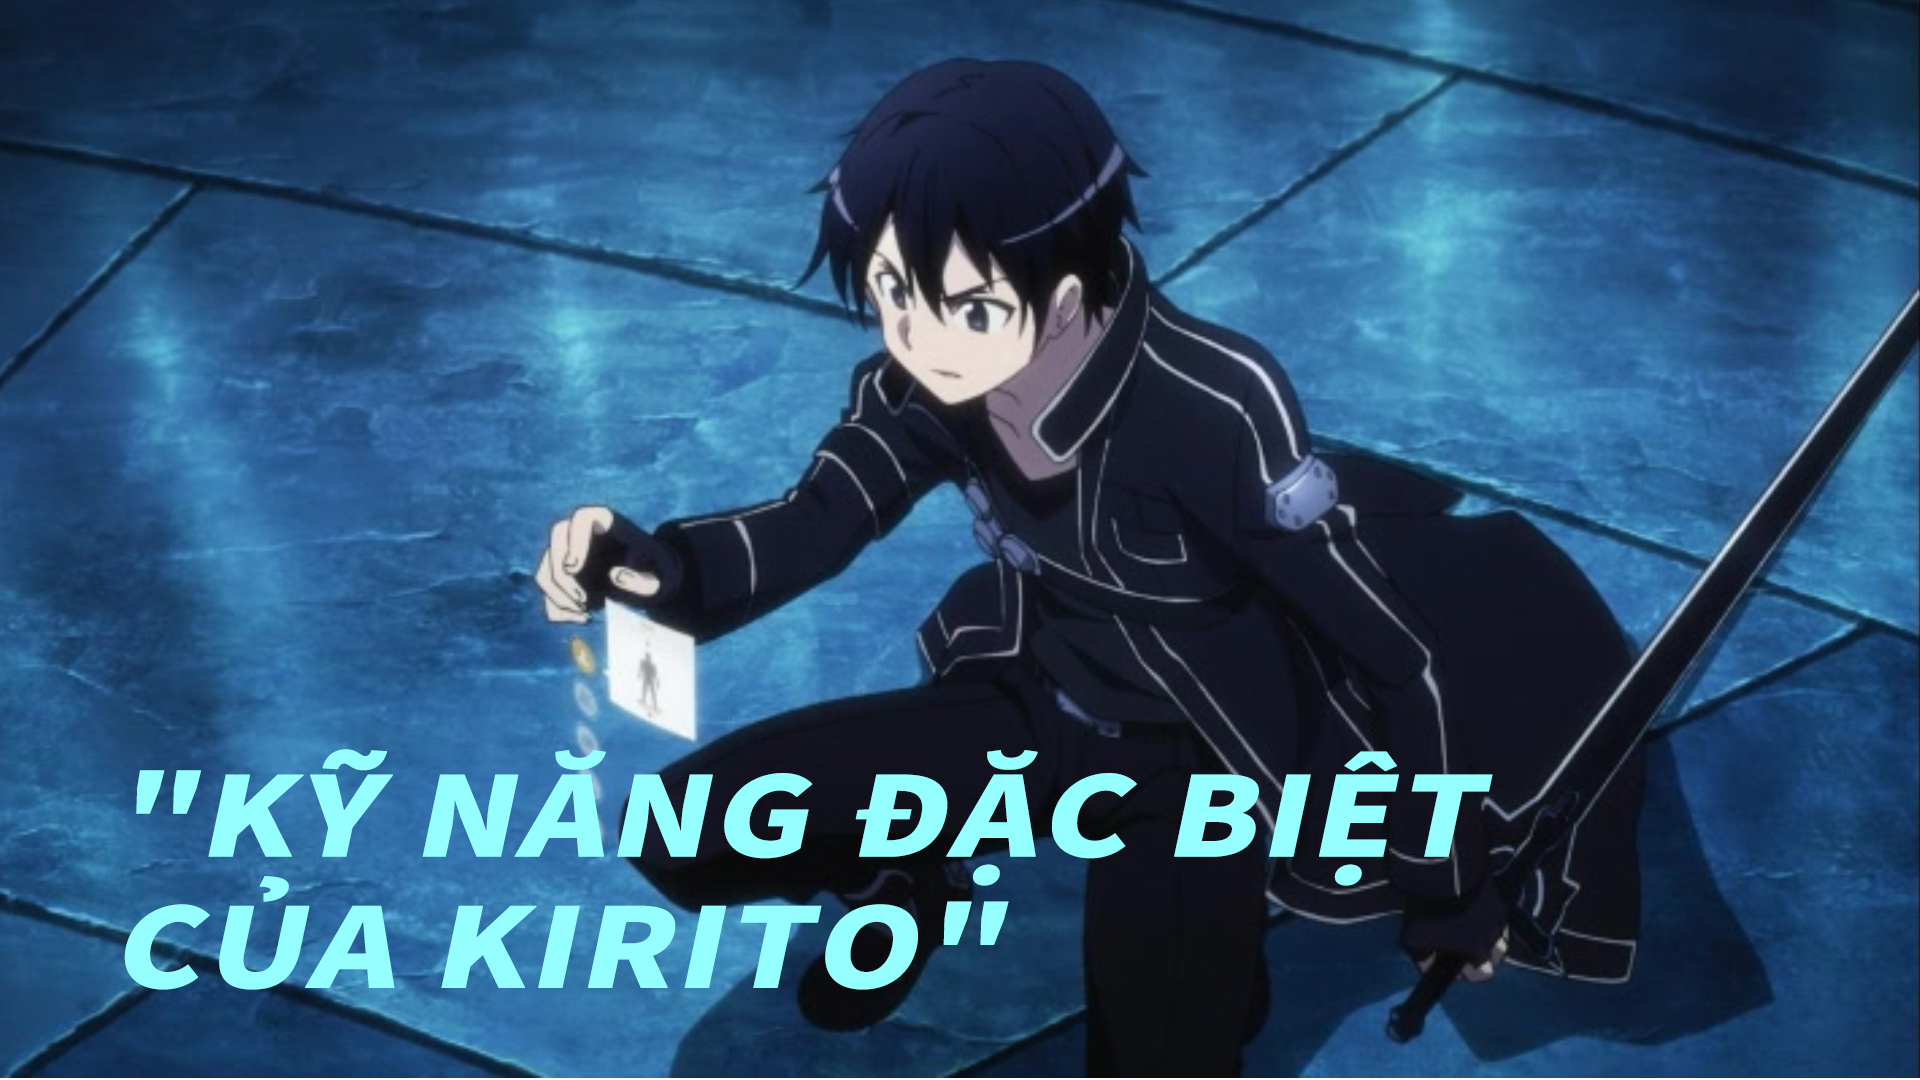 Kirito - Hãy xem hình ảnh về Kirito, nhân vật chính trong bộ truyện tranh và anime nổi tiếng Sword Art Online. Với khả năng chiến đấu kinh điển và tính cách mạnh mẽ, Kirito là một trong những nhân vật anime được yêu thích nhất.